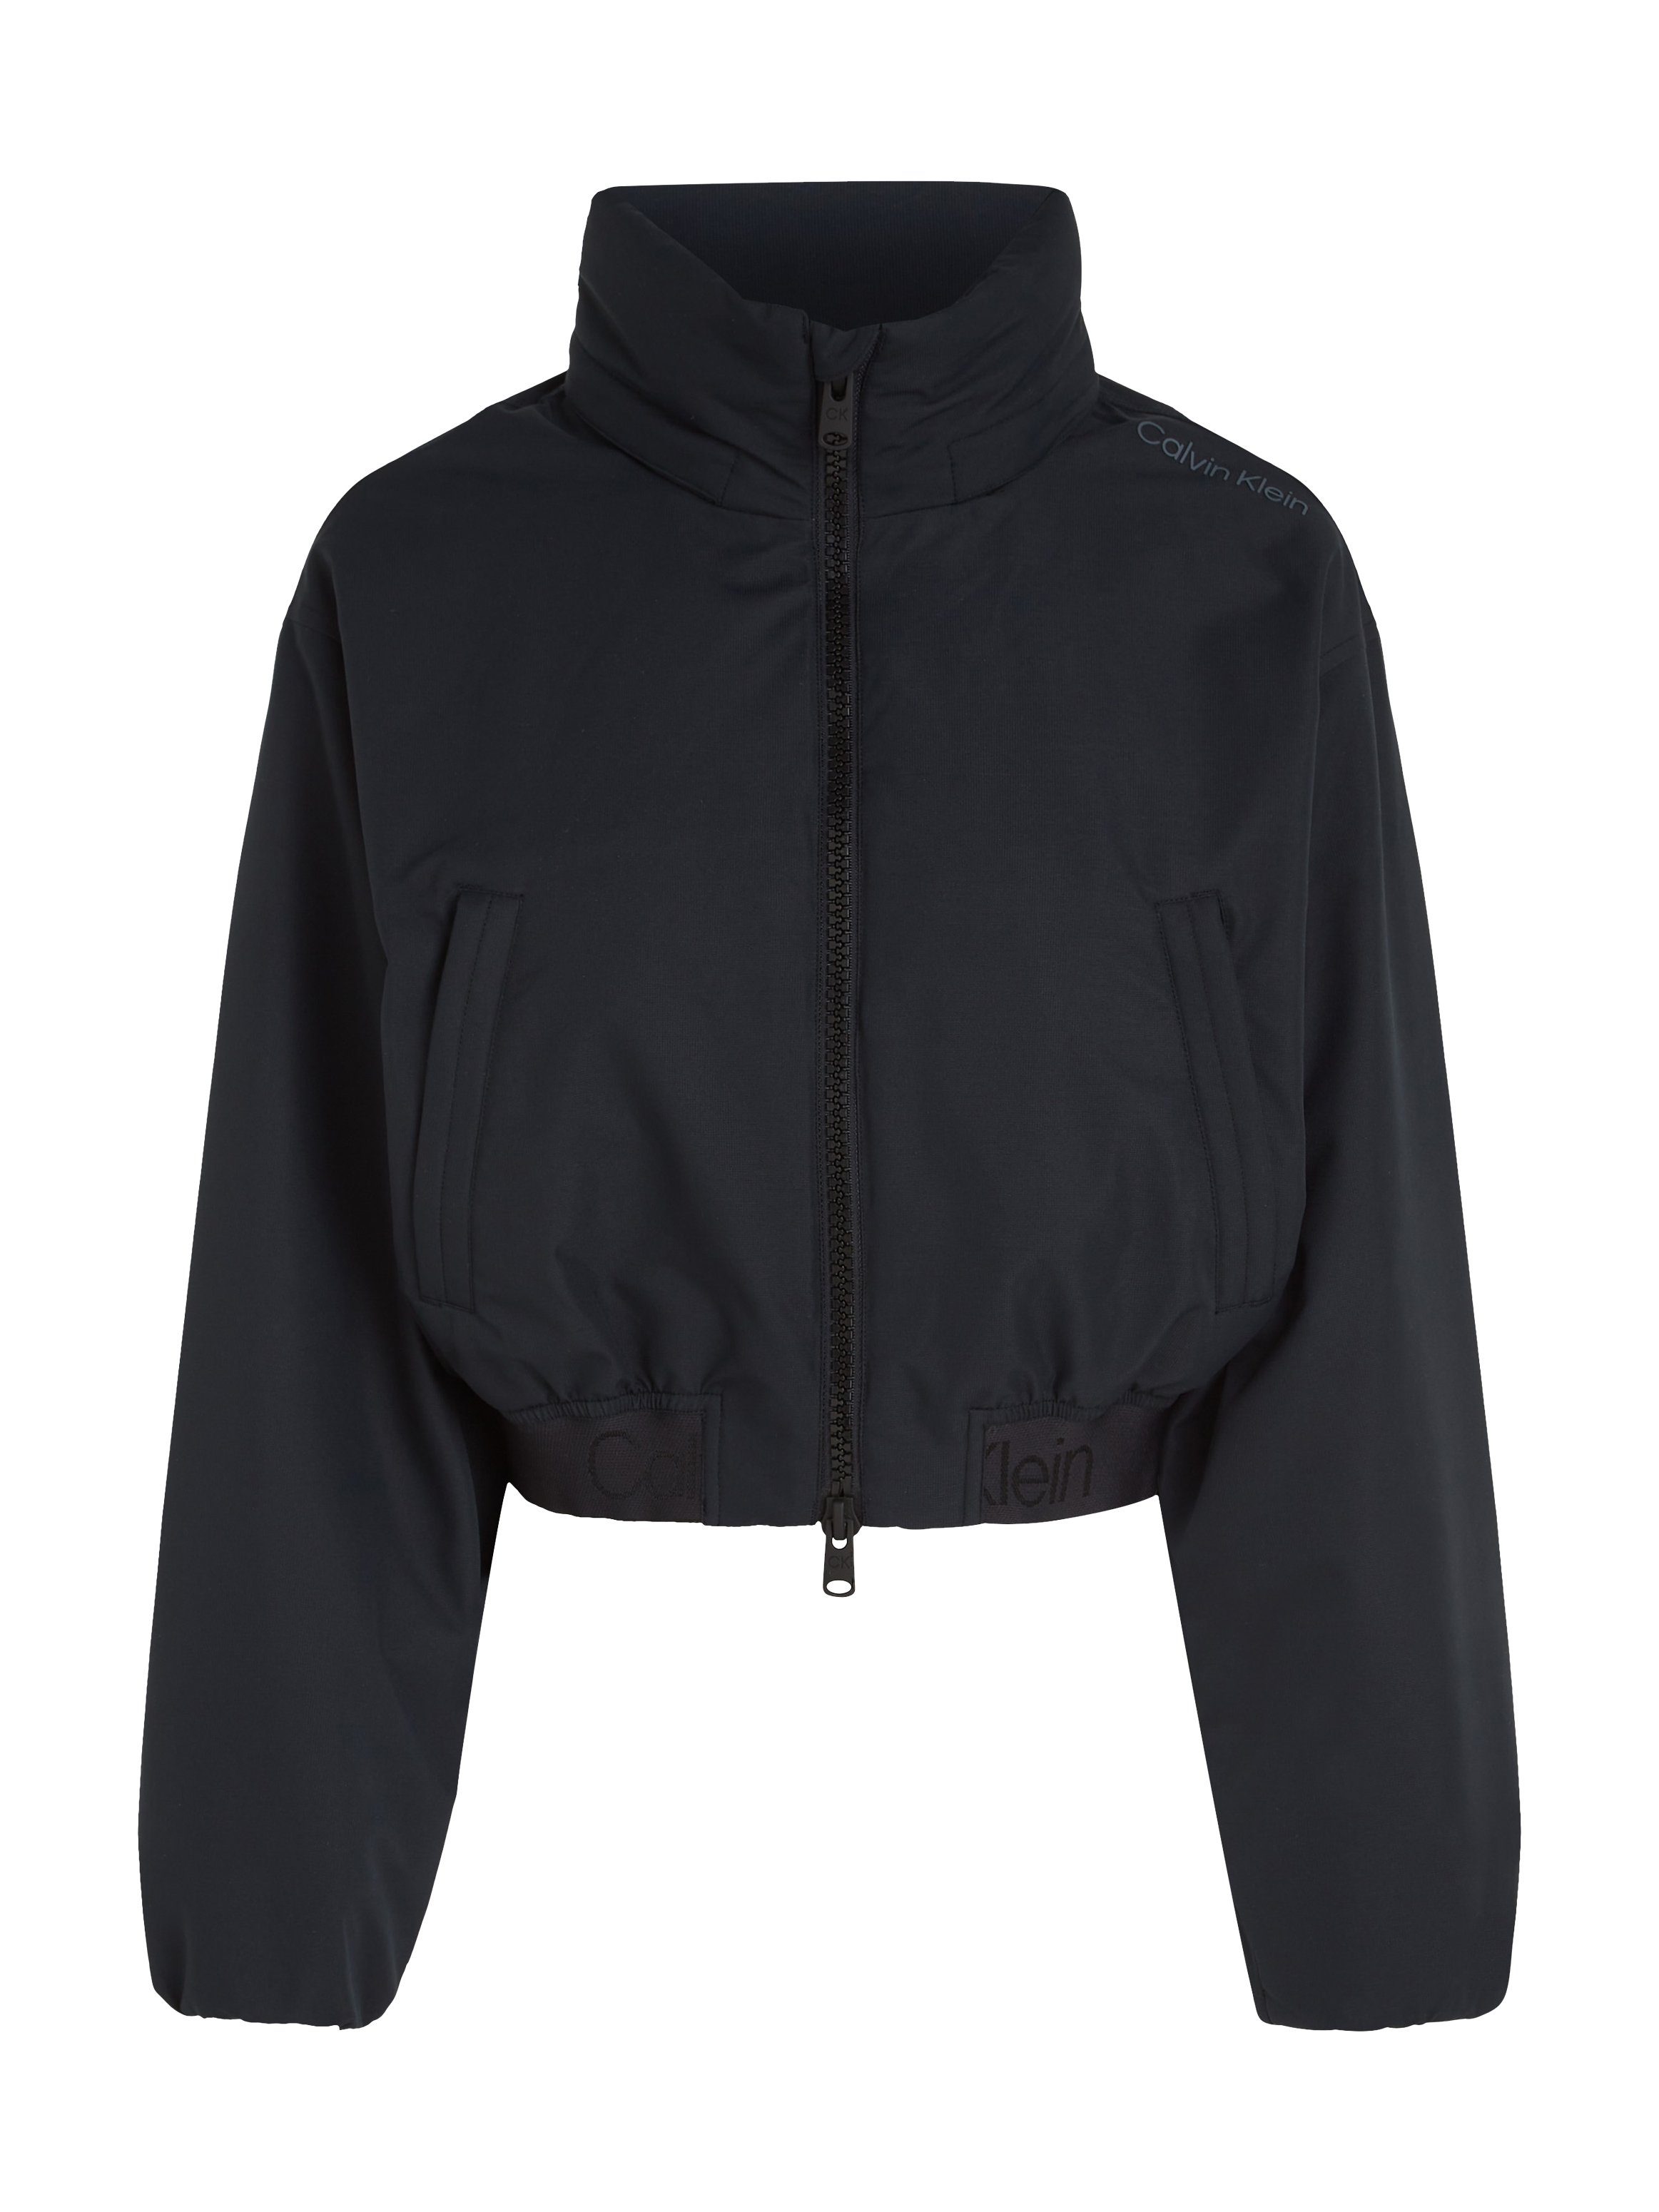 Calvin Klein Sport Outdoorjacke PW - Padded Jacket schwarz | Jacken